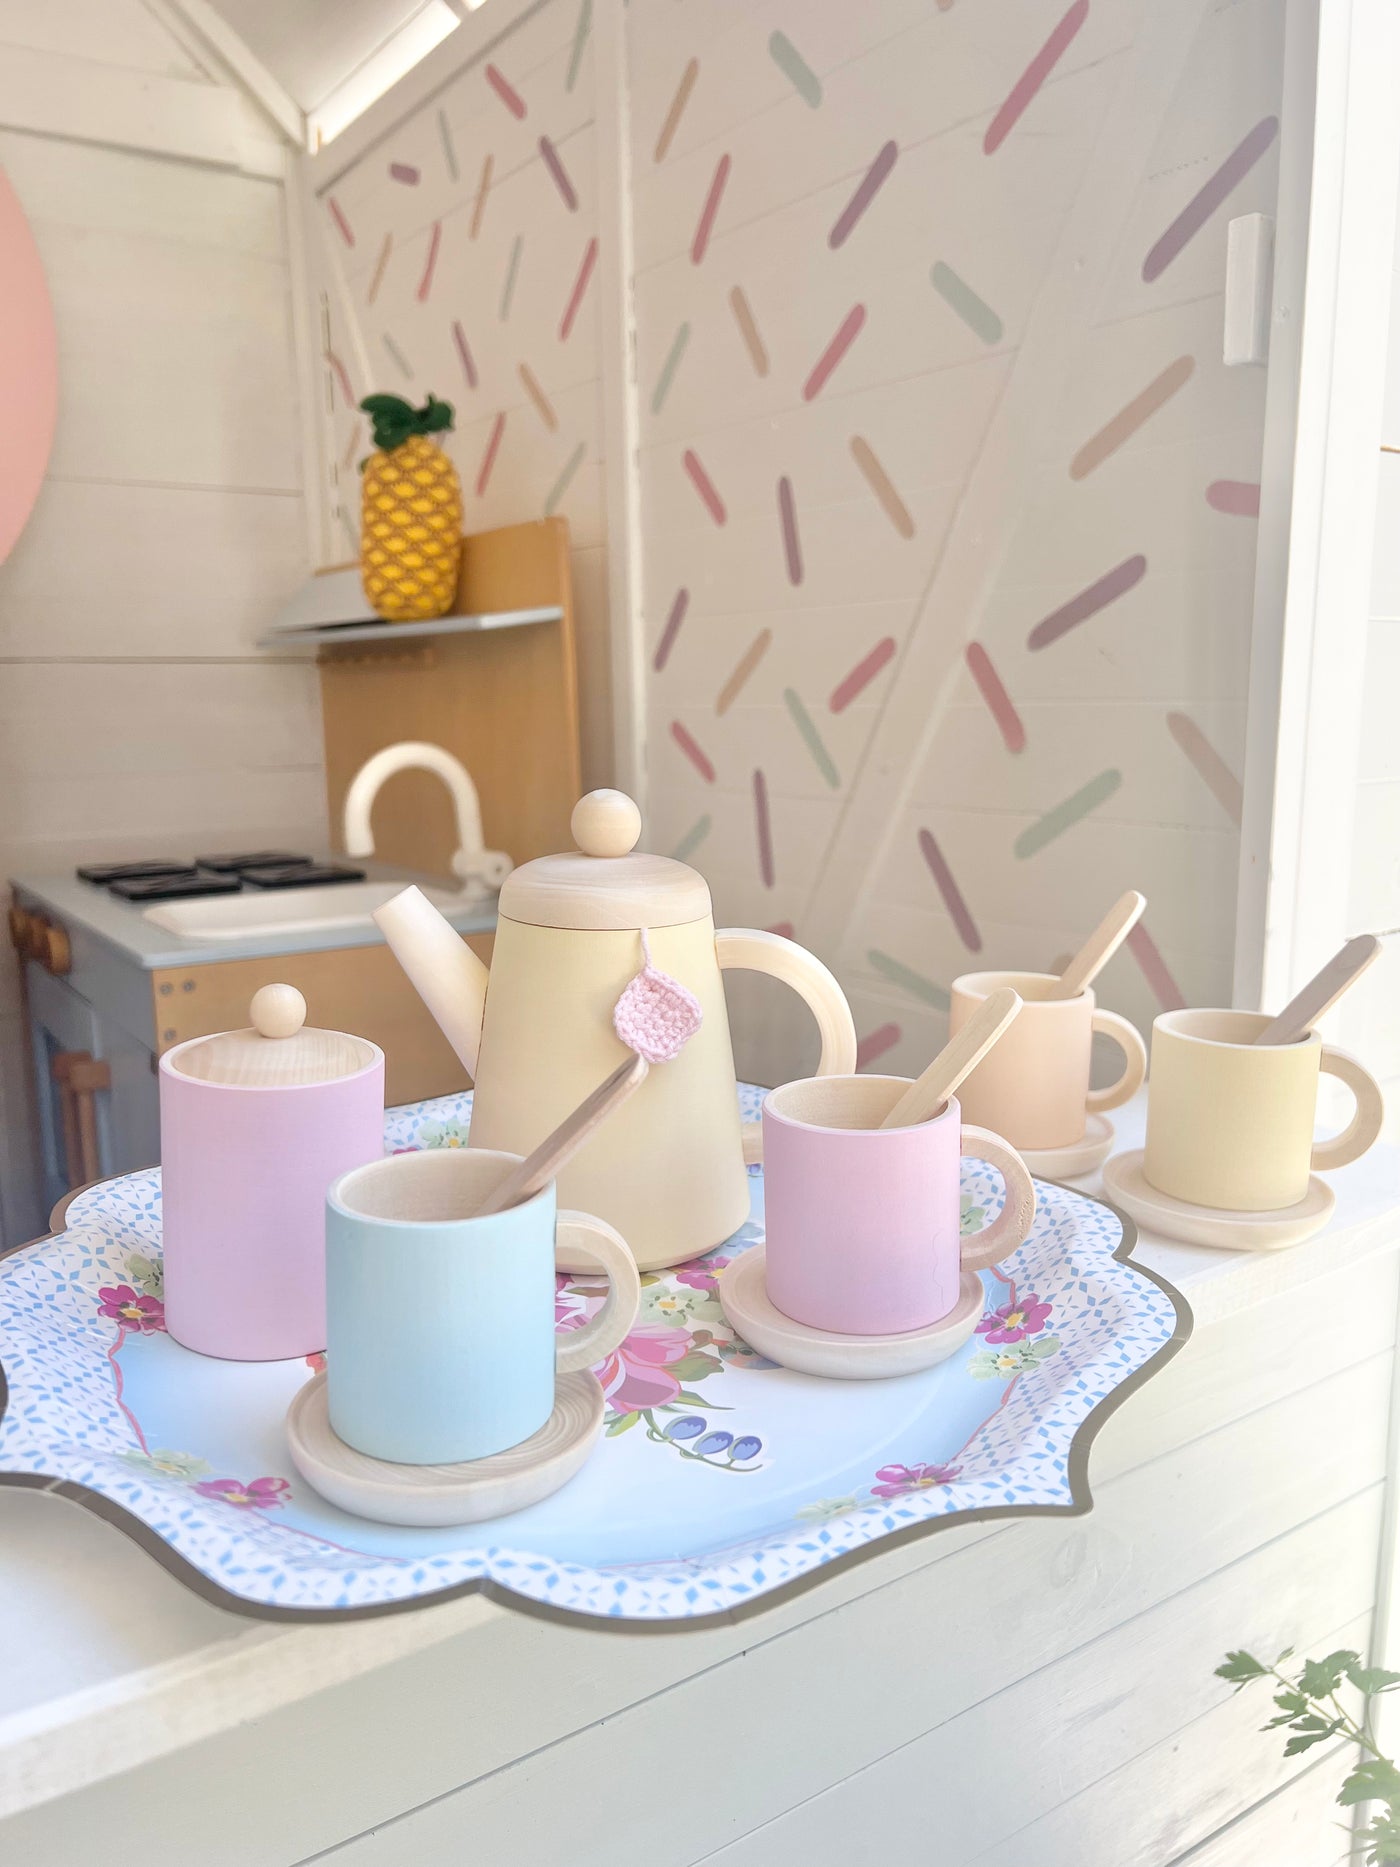 Pastel Dreams Wooden Toy Tea set | Hand painted, 10 piece set